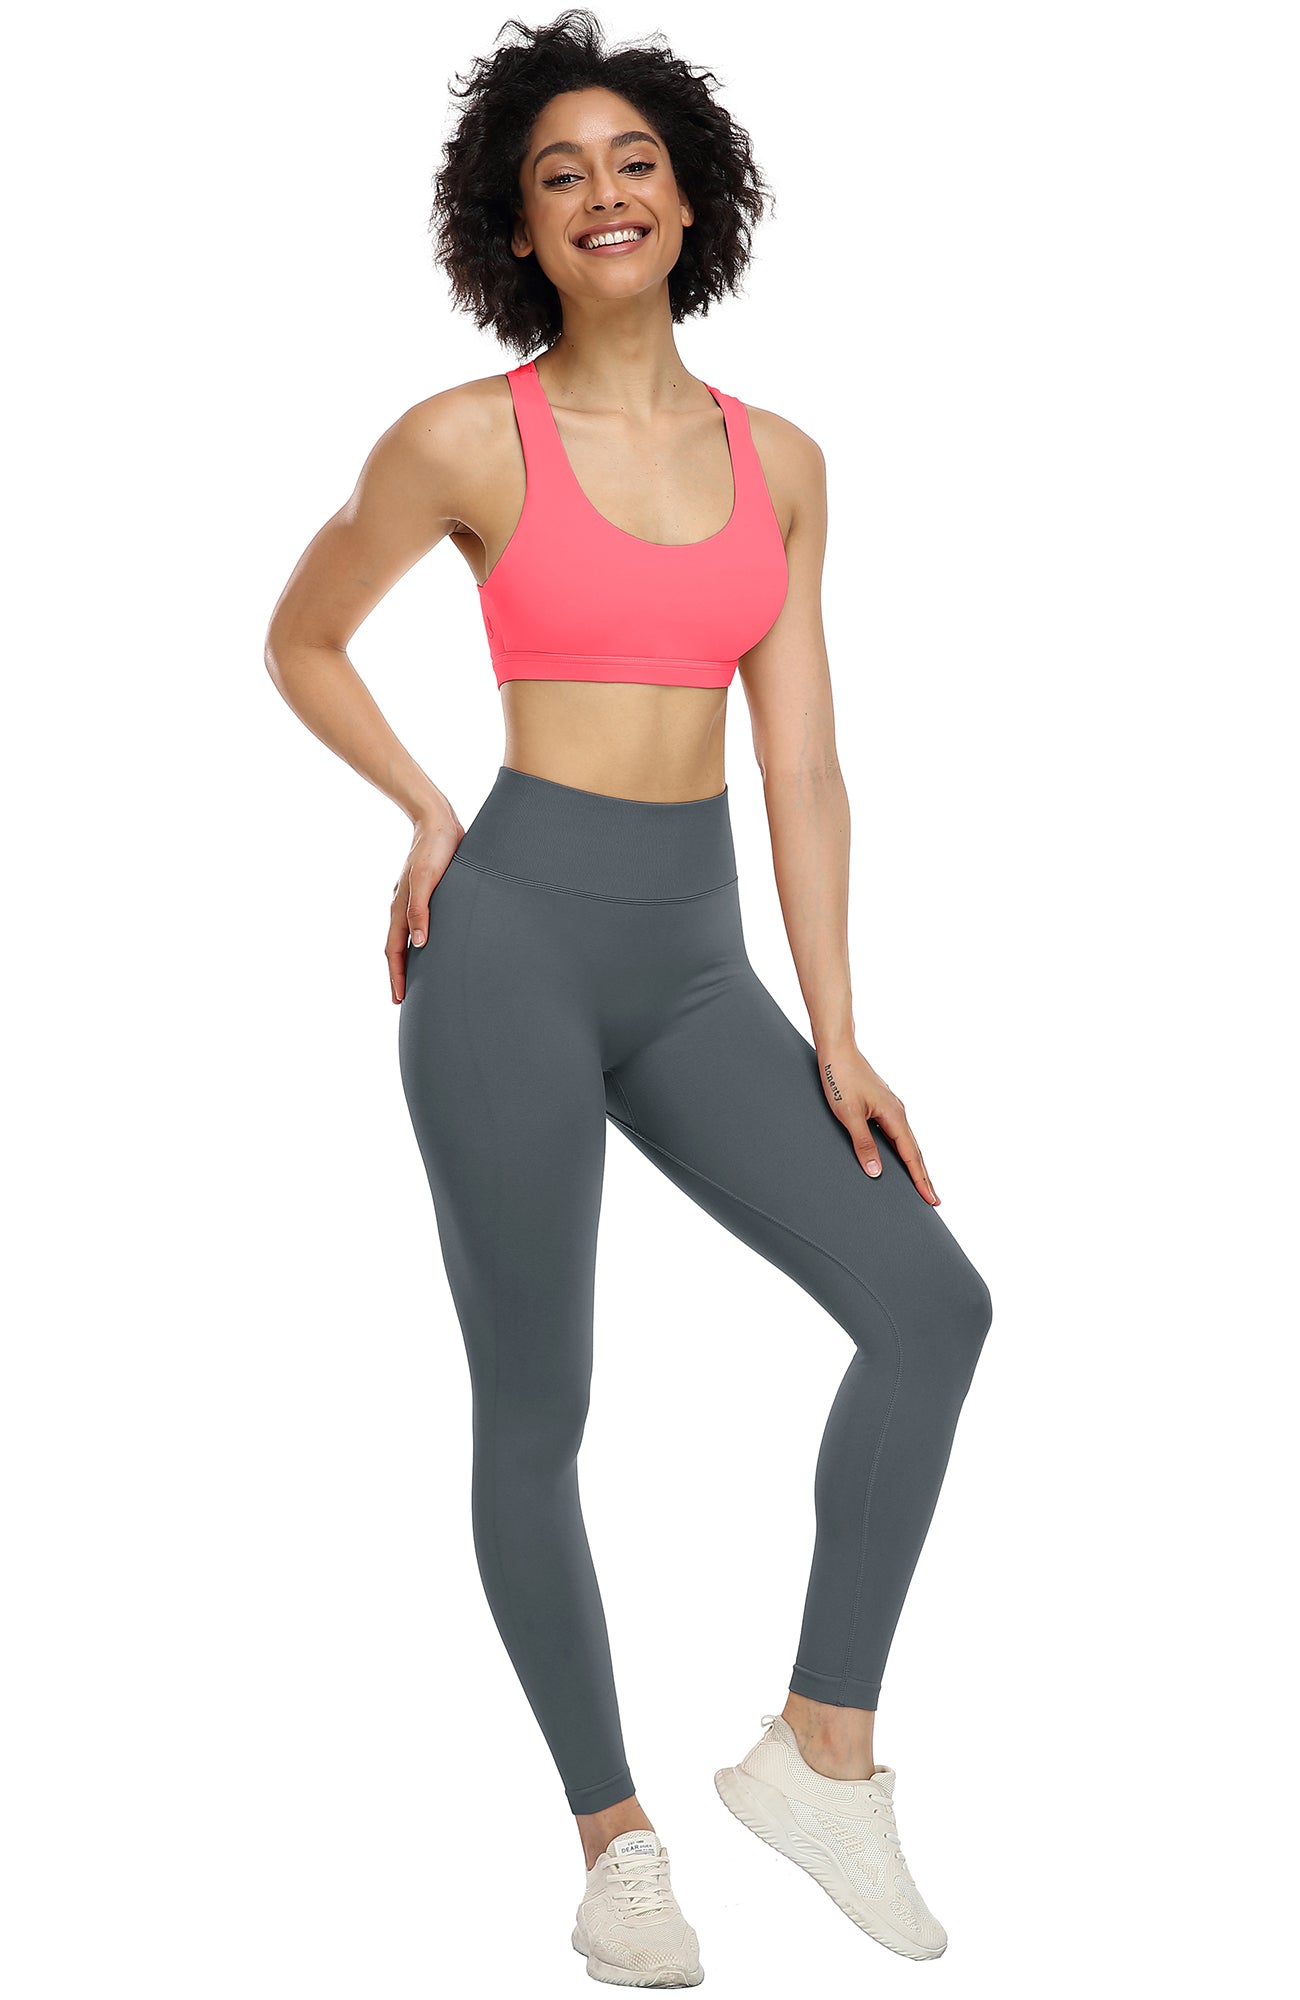 zanvin Sports Bras for Women,Clearance Women's Vest Yoga Comfortable  Wireless Underwear Sports Bras